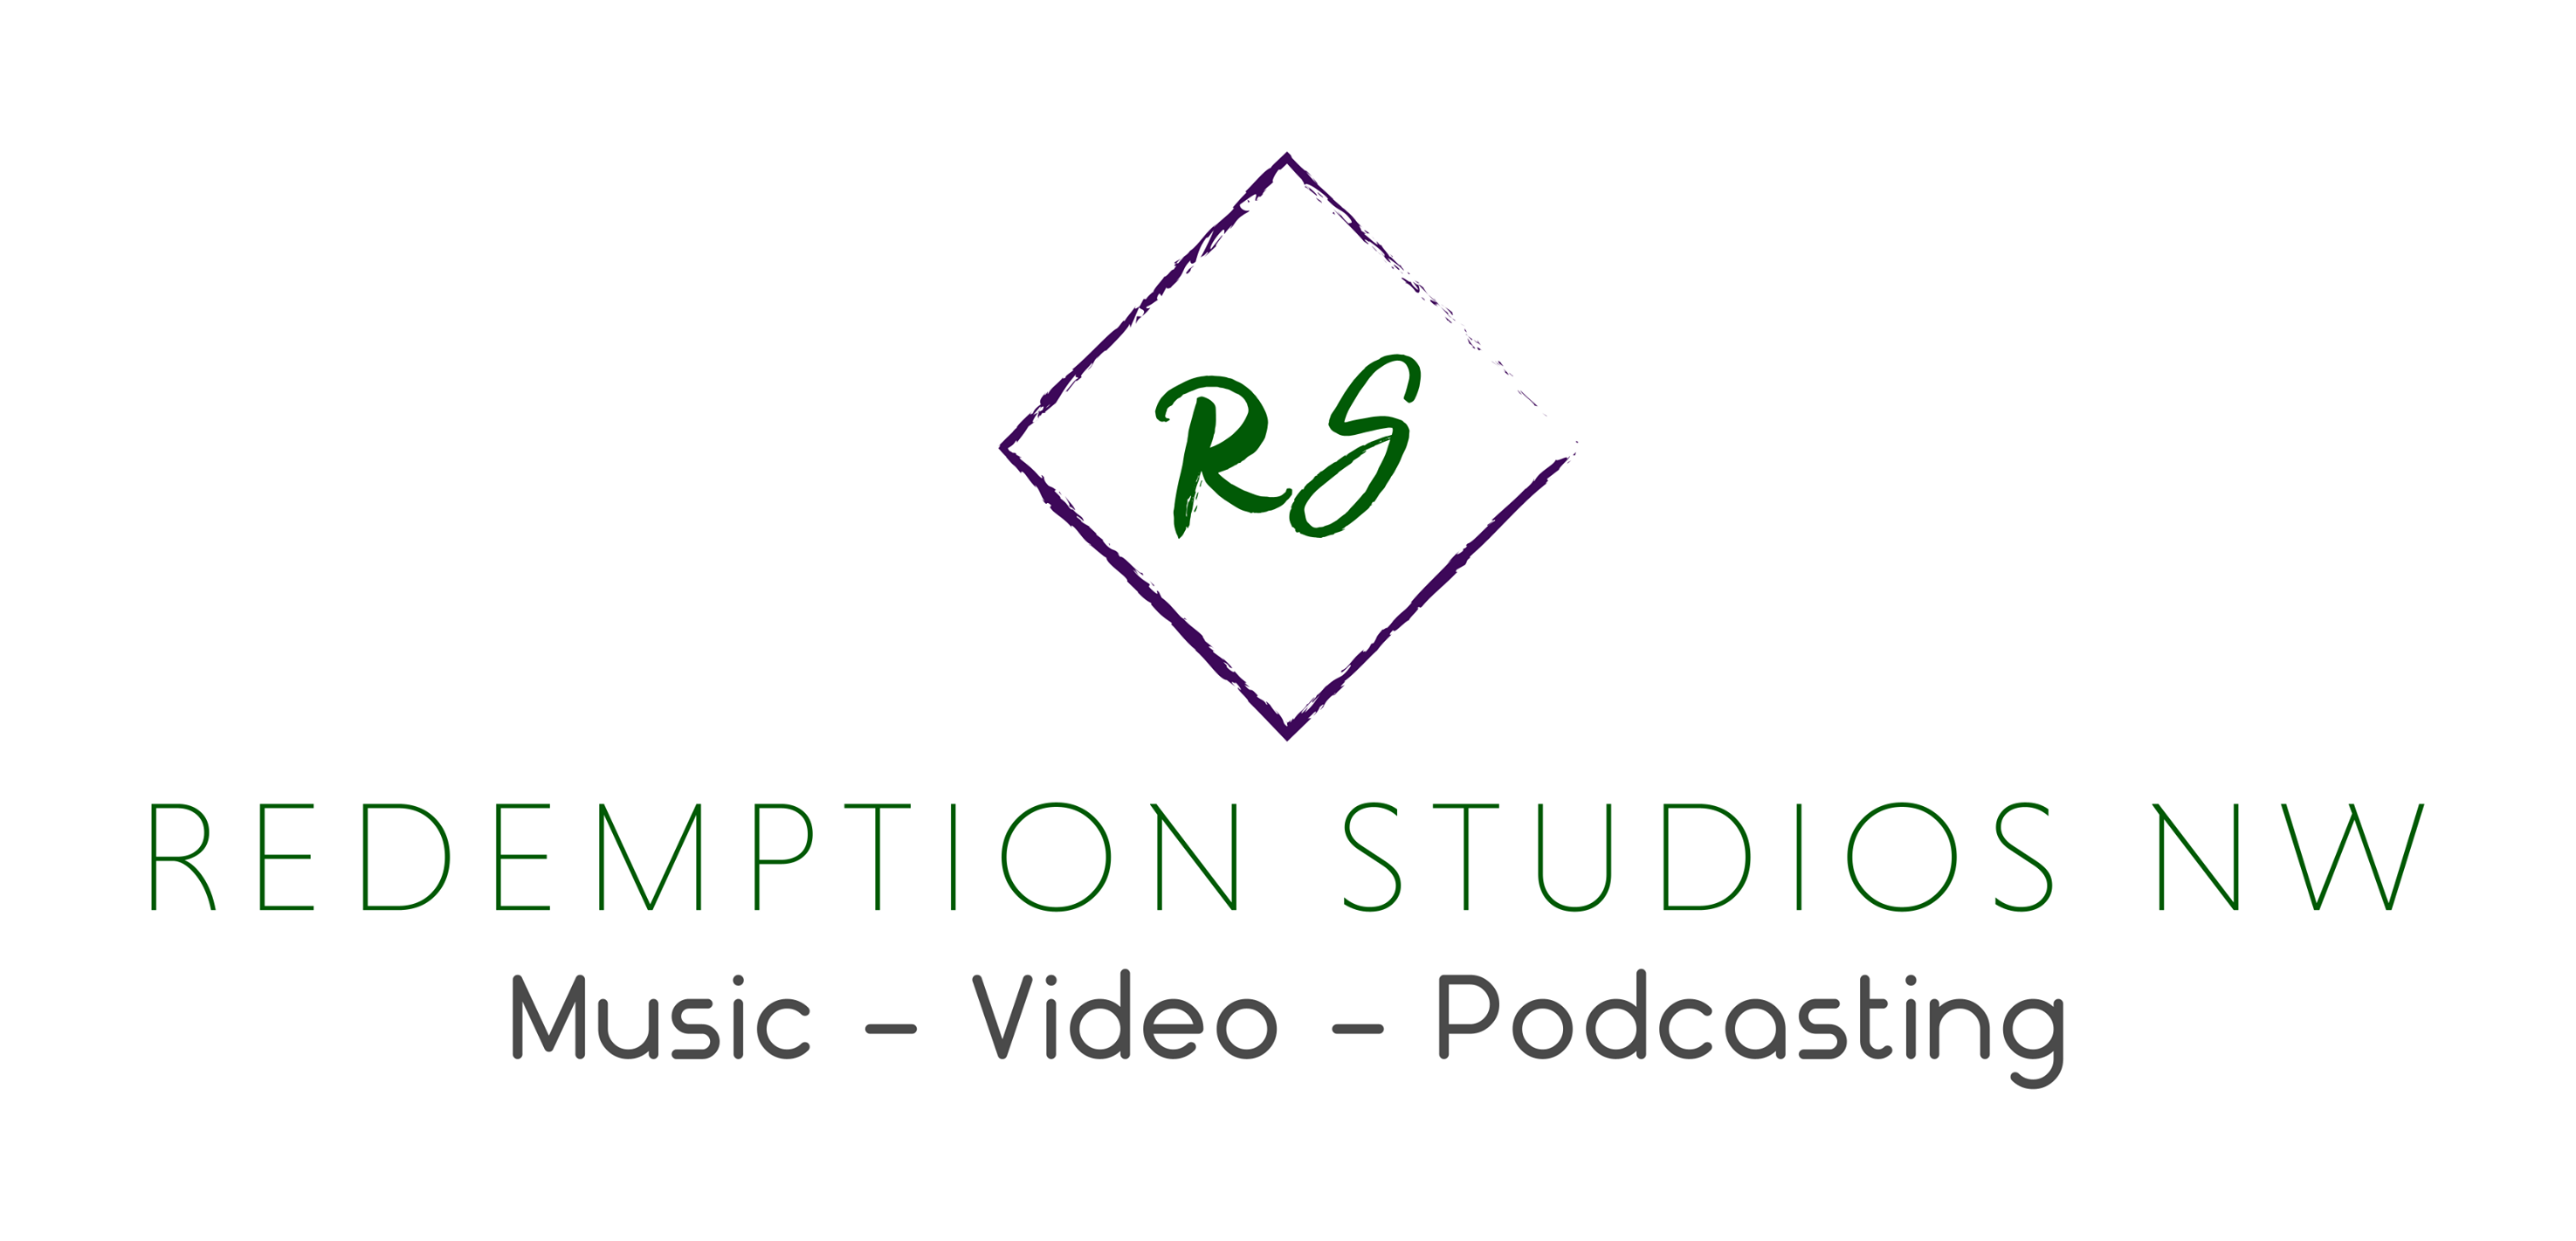 Redemption Studios Northwest